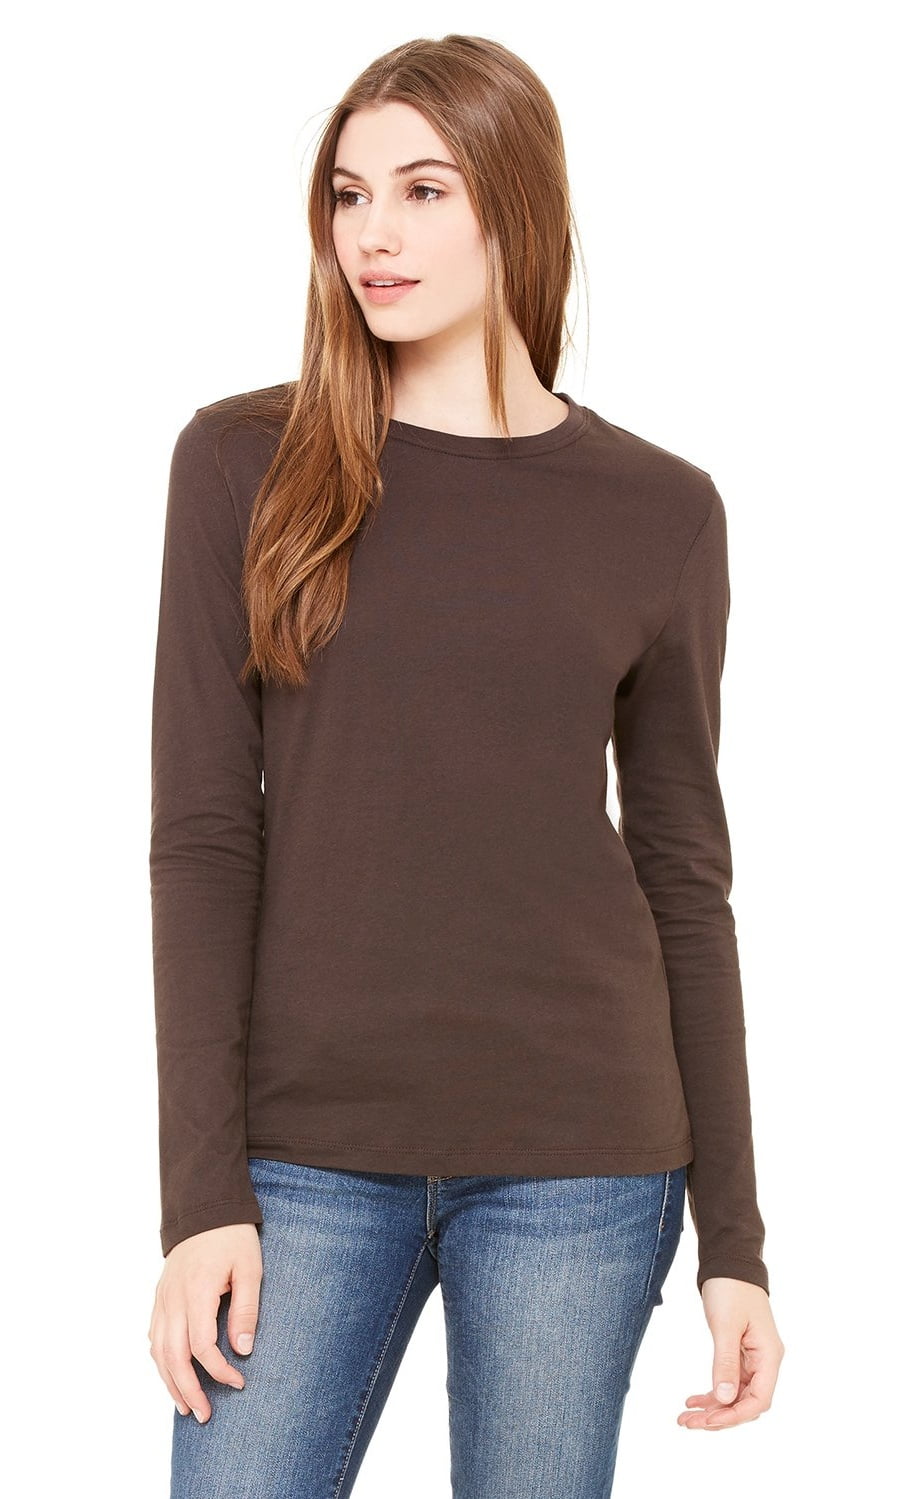 Women's Thick Crewneck Long Sleeve T-Shirt - Walmart.com